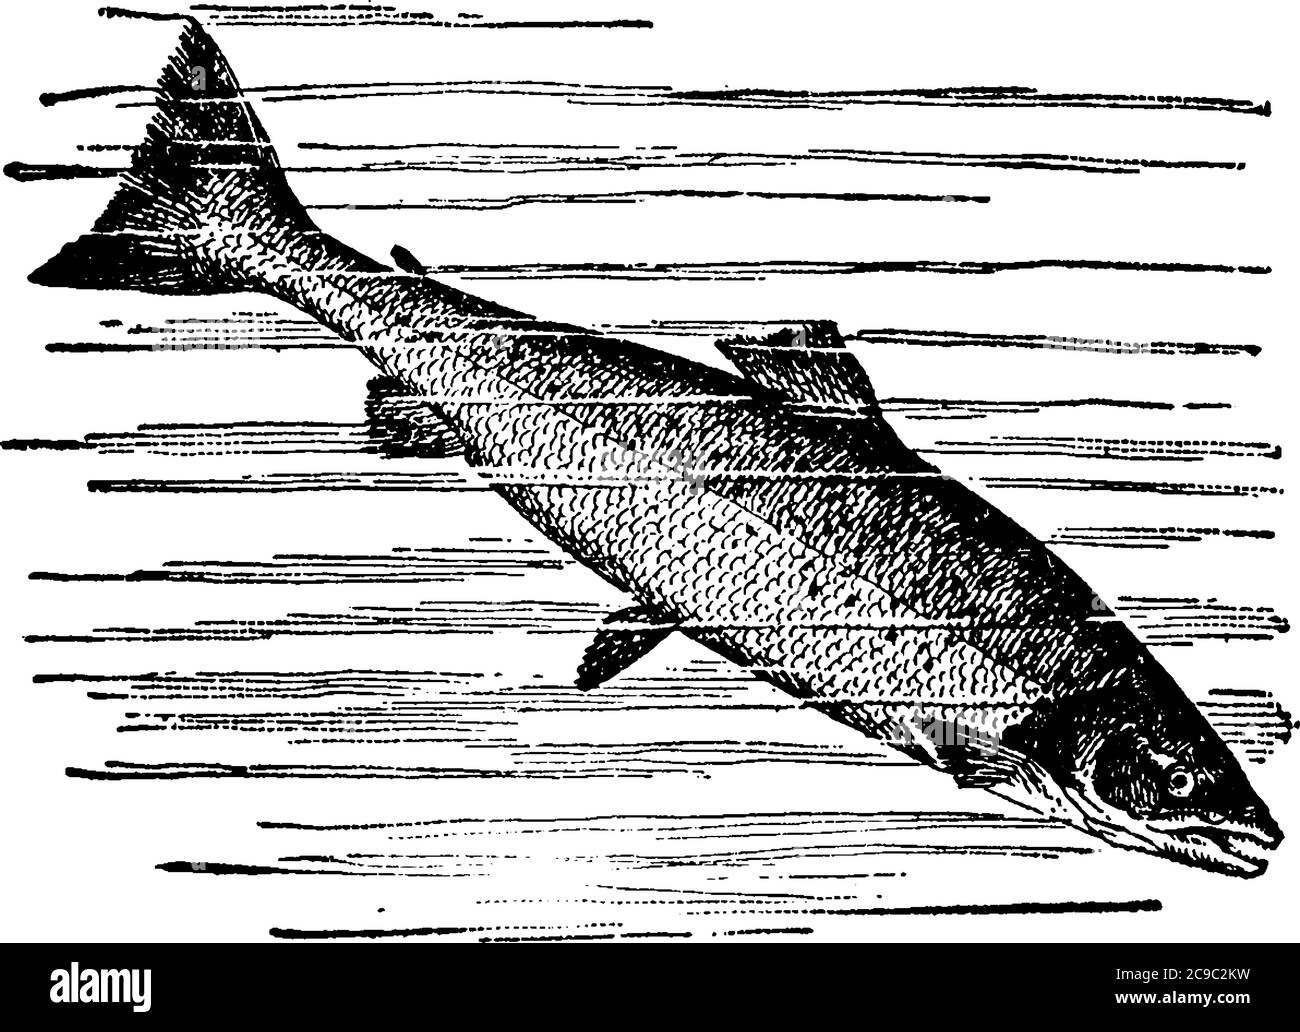 Rochenflossen-Fische in der Familie Salmonidae, die sowohl Salz als auch frisches Wasser bewohnen, erreichen eine Länge von drei bis vier Fuß und ein durchschnittliches Gewicht von Stock Vektor